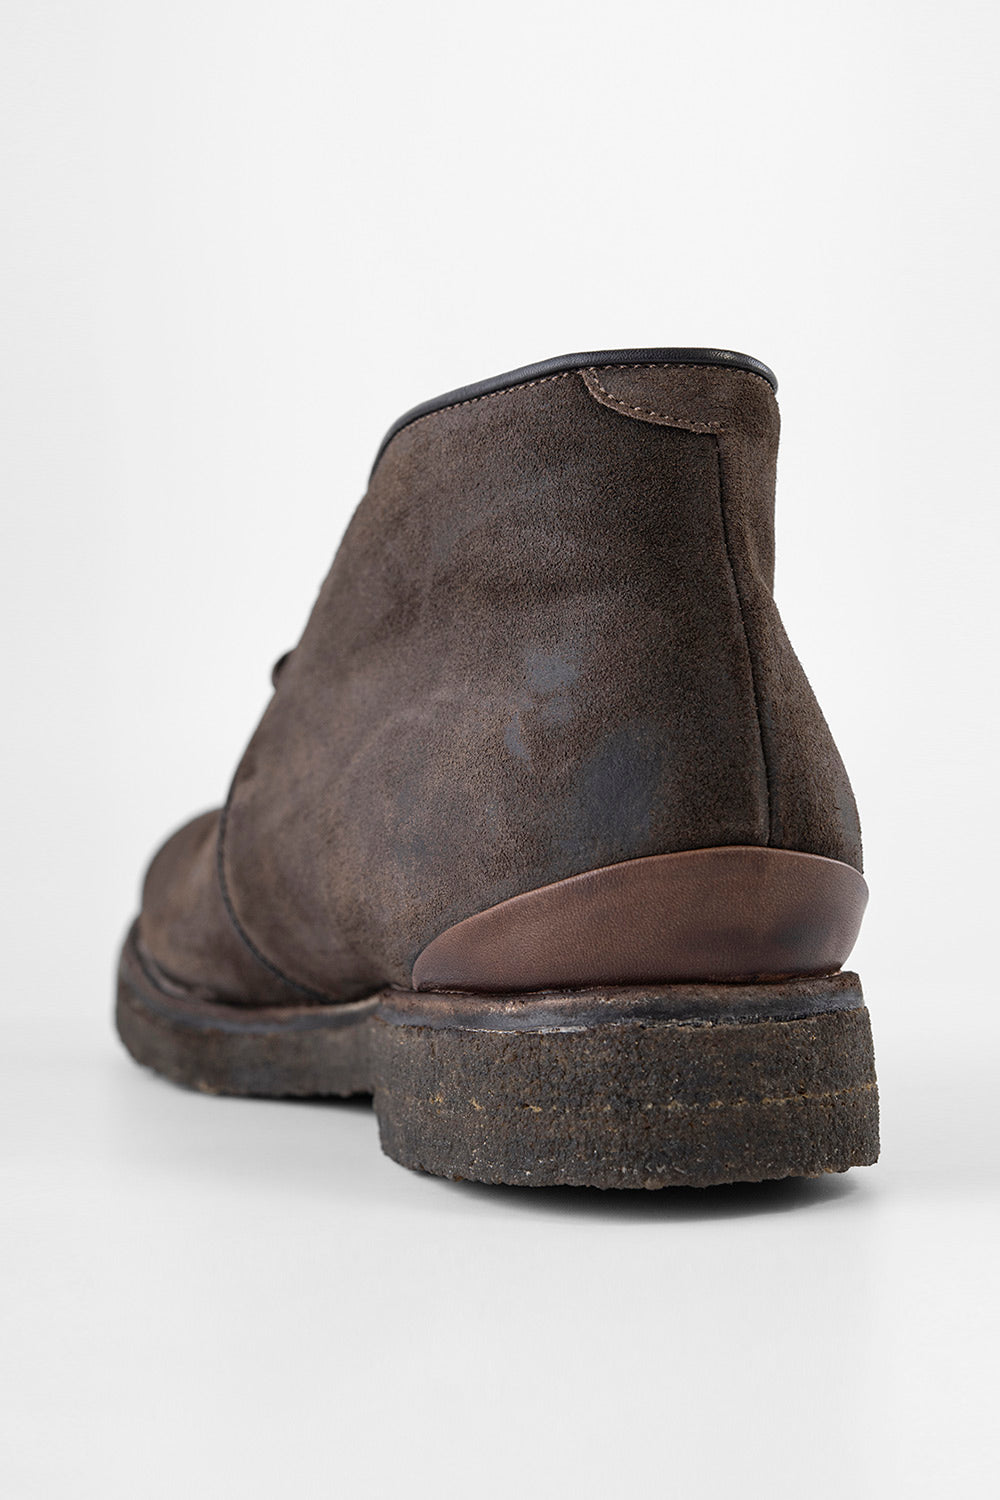 BROMPTON java-brown suede chukka boots | untamed street | men – UNTAMED ...